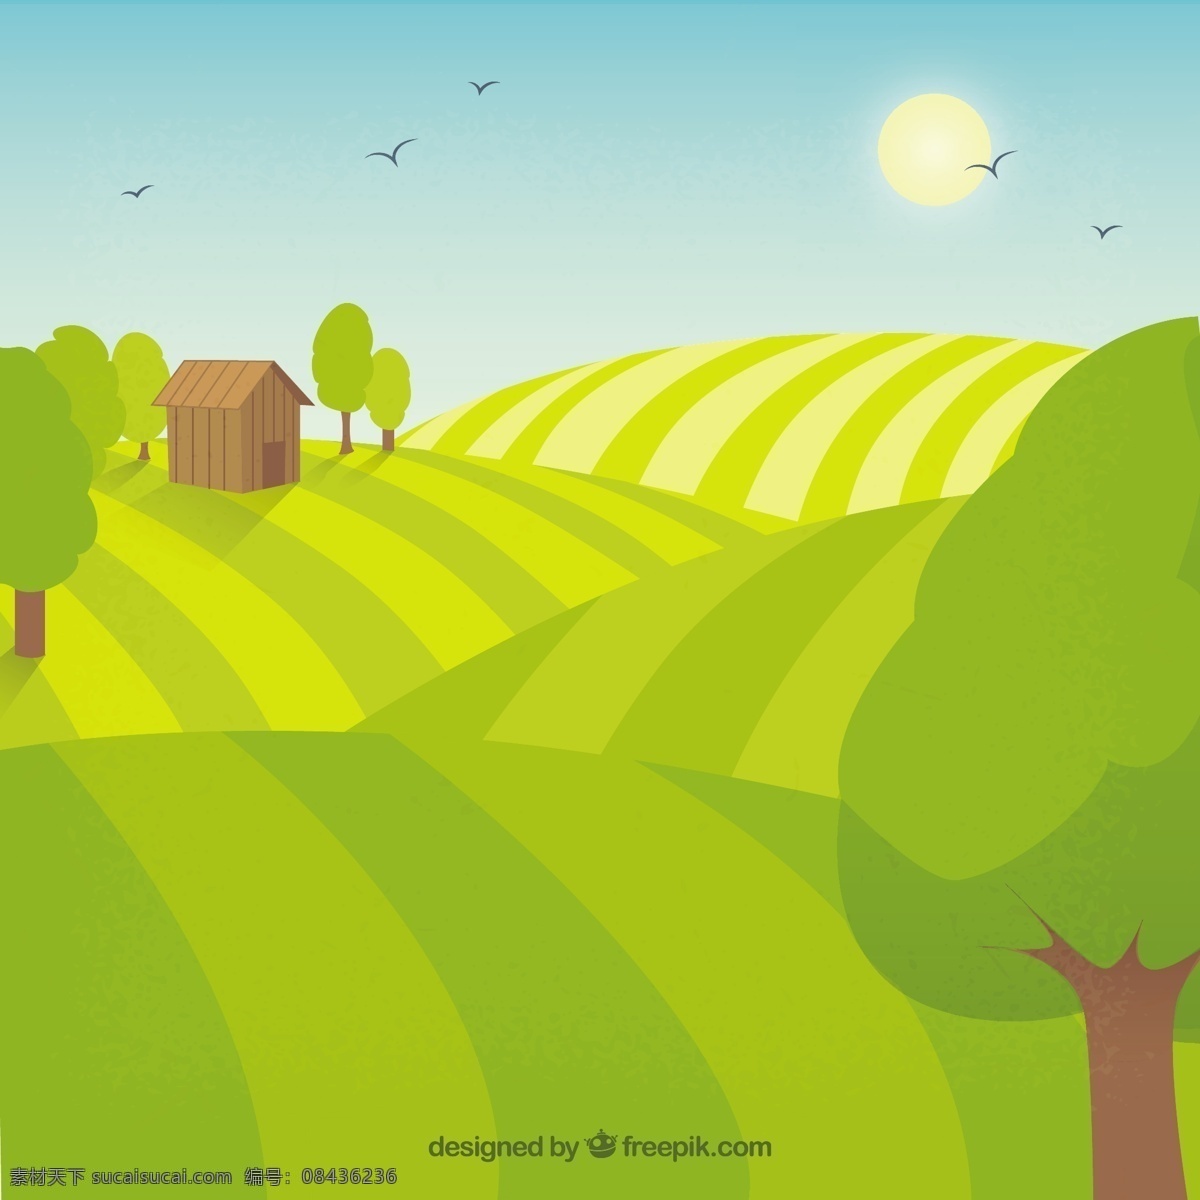 小农场在农村 鸟 自然 农业 园林 蔬菜 生态 有机 环境 发展 地面 乡村 友好 农村 可持续发展 小 植被